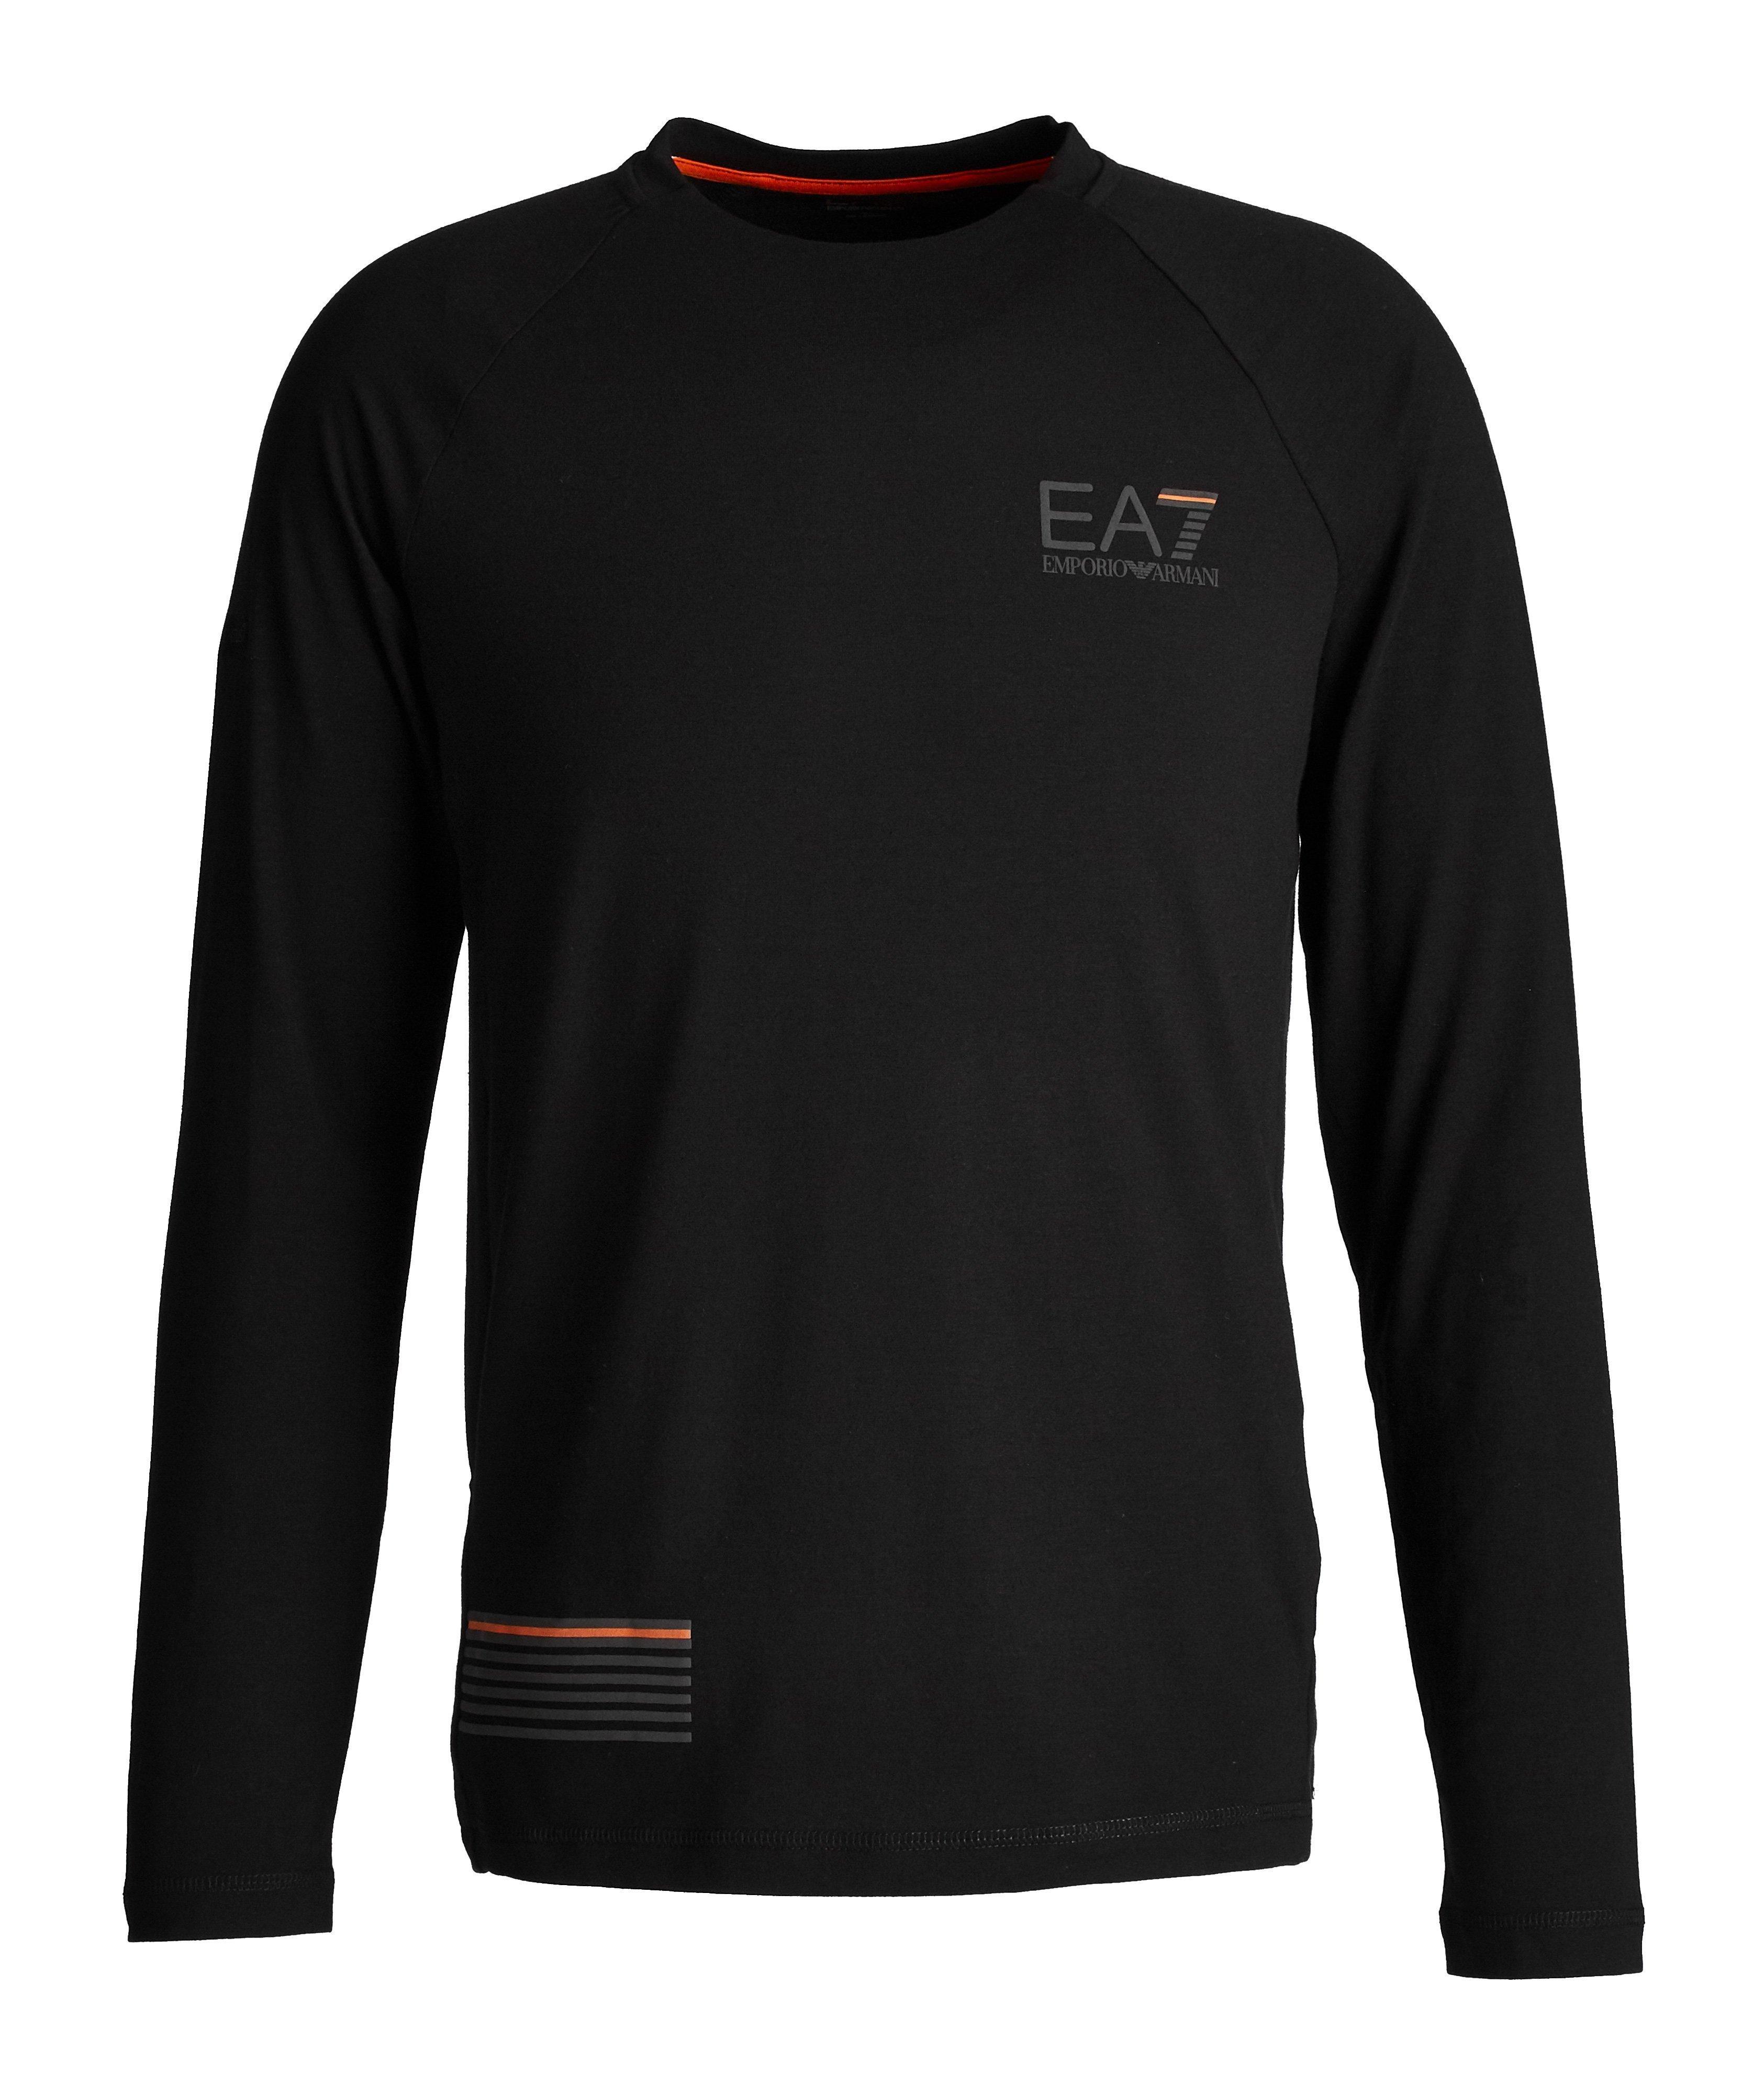 EA7 Long-Sleeve Cotton-Blend T-Shirt image 0